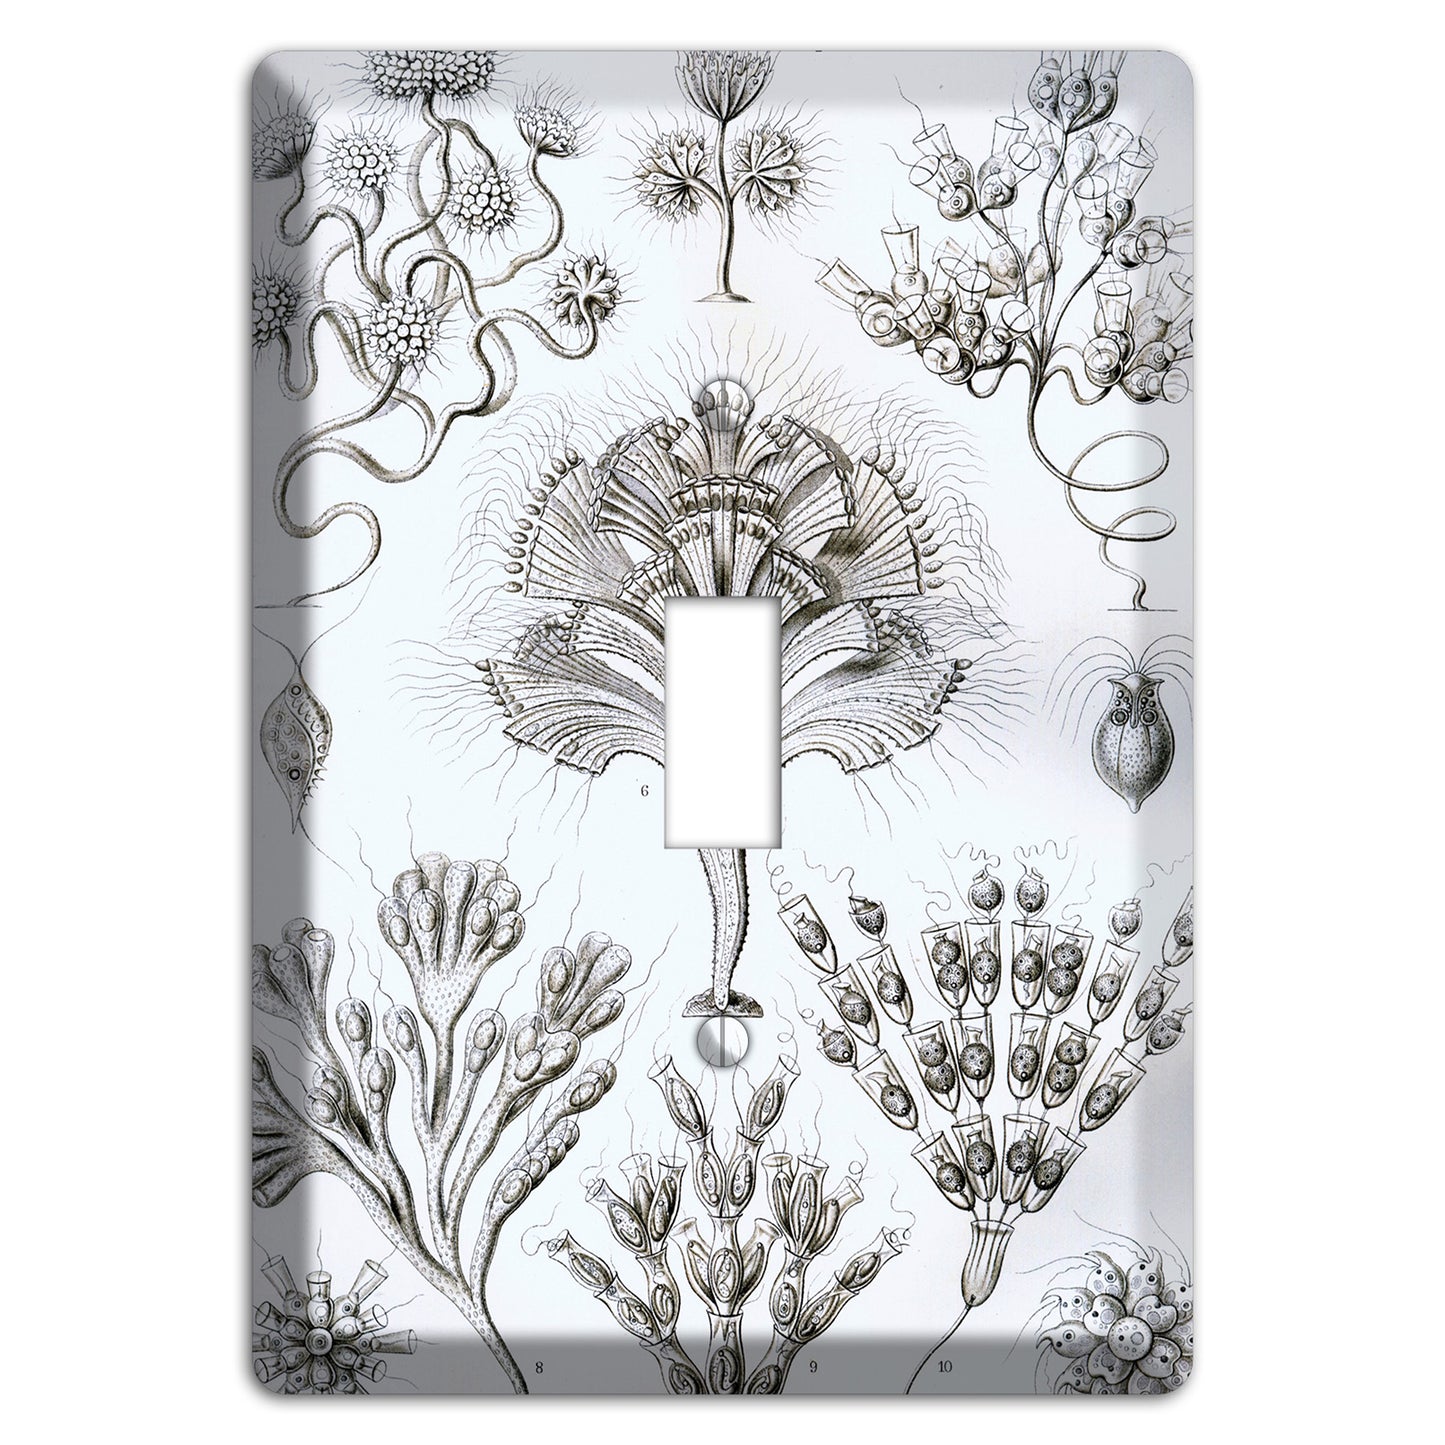 Haeckel - Flagellata Cover Plates